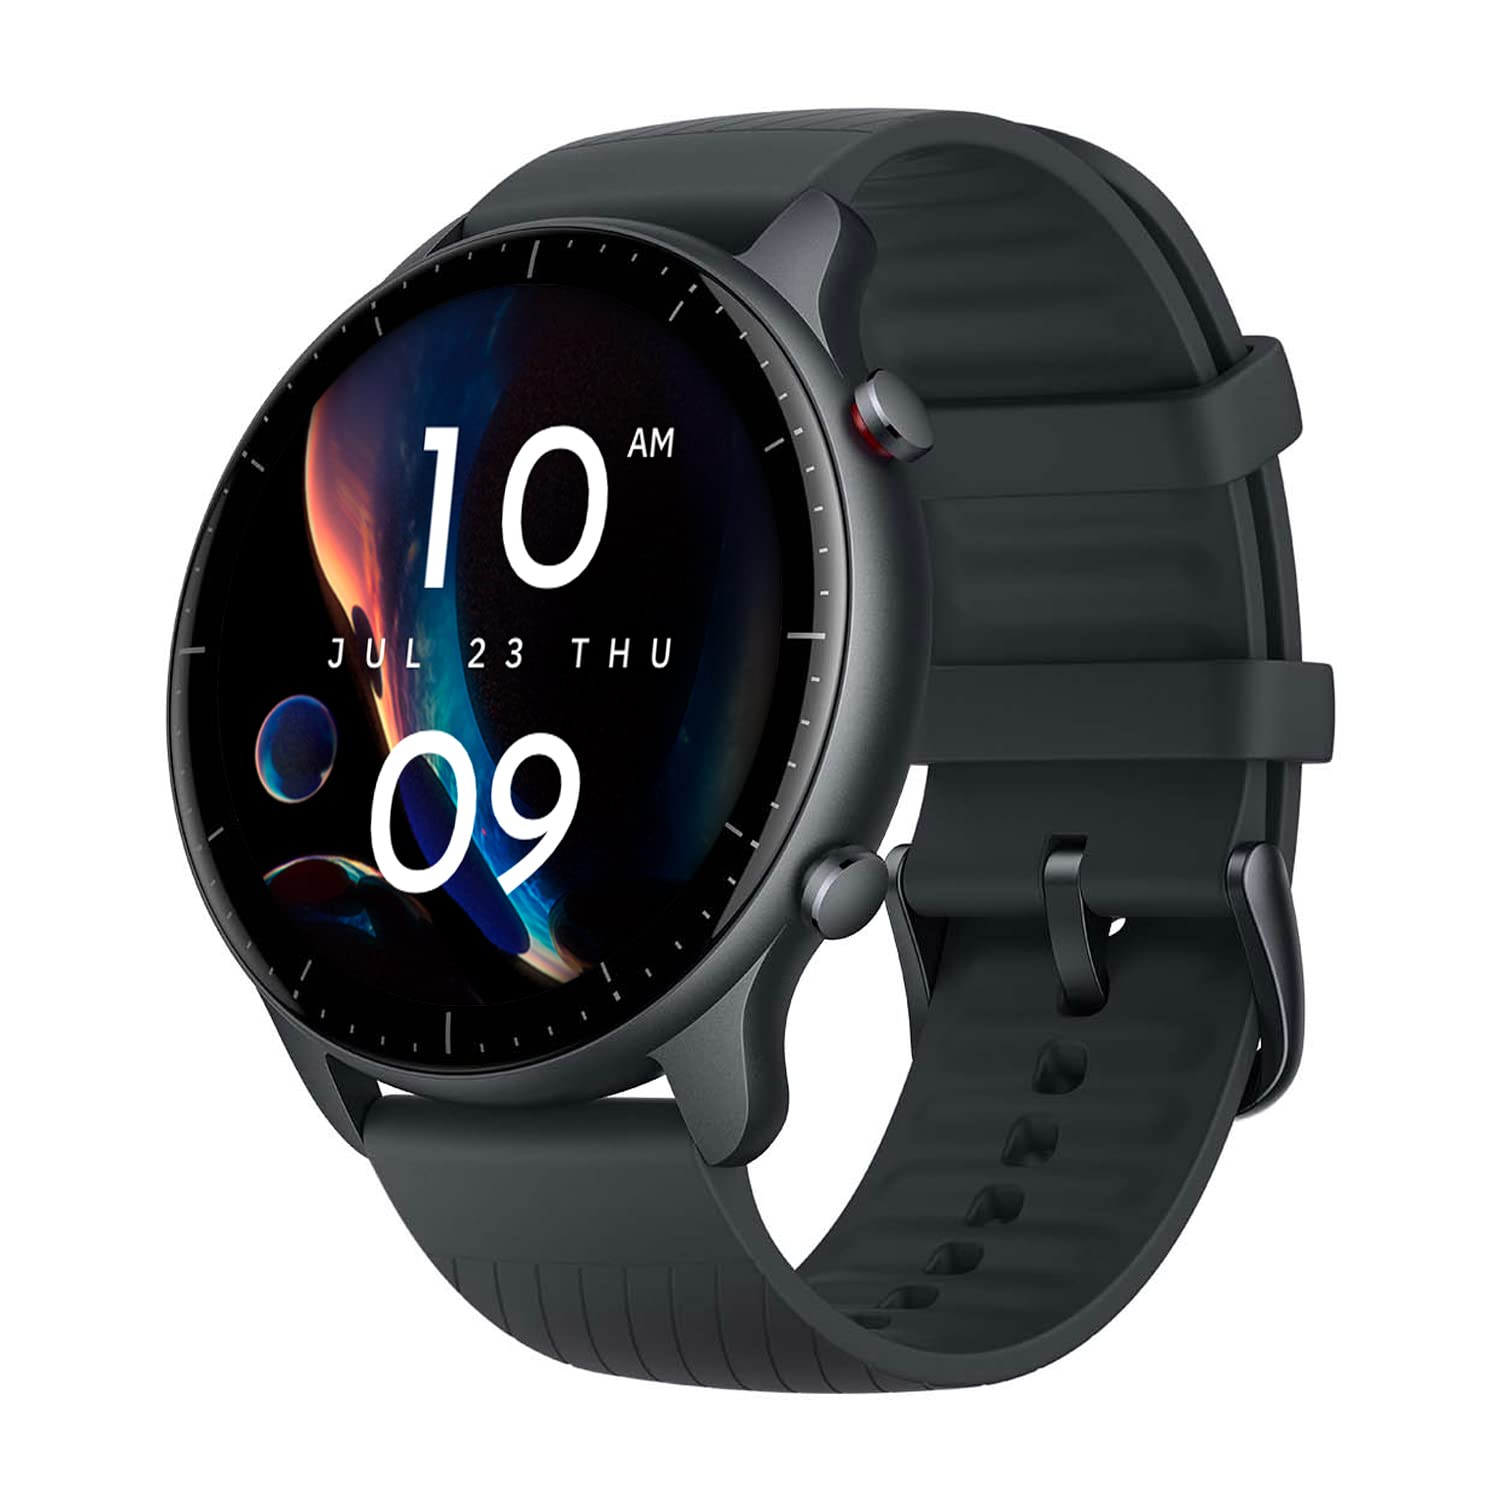 Buy [2022 New Version] Amazfit GTR 2 Smart Watch for Men, Alexa